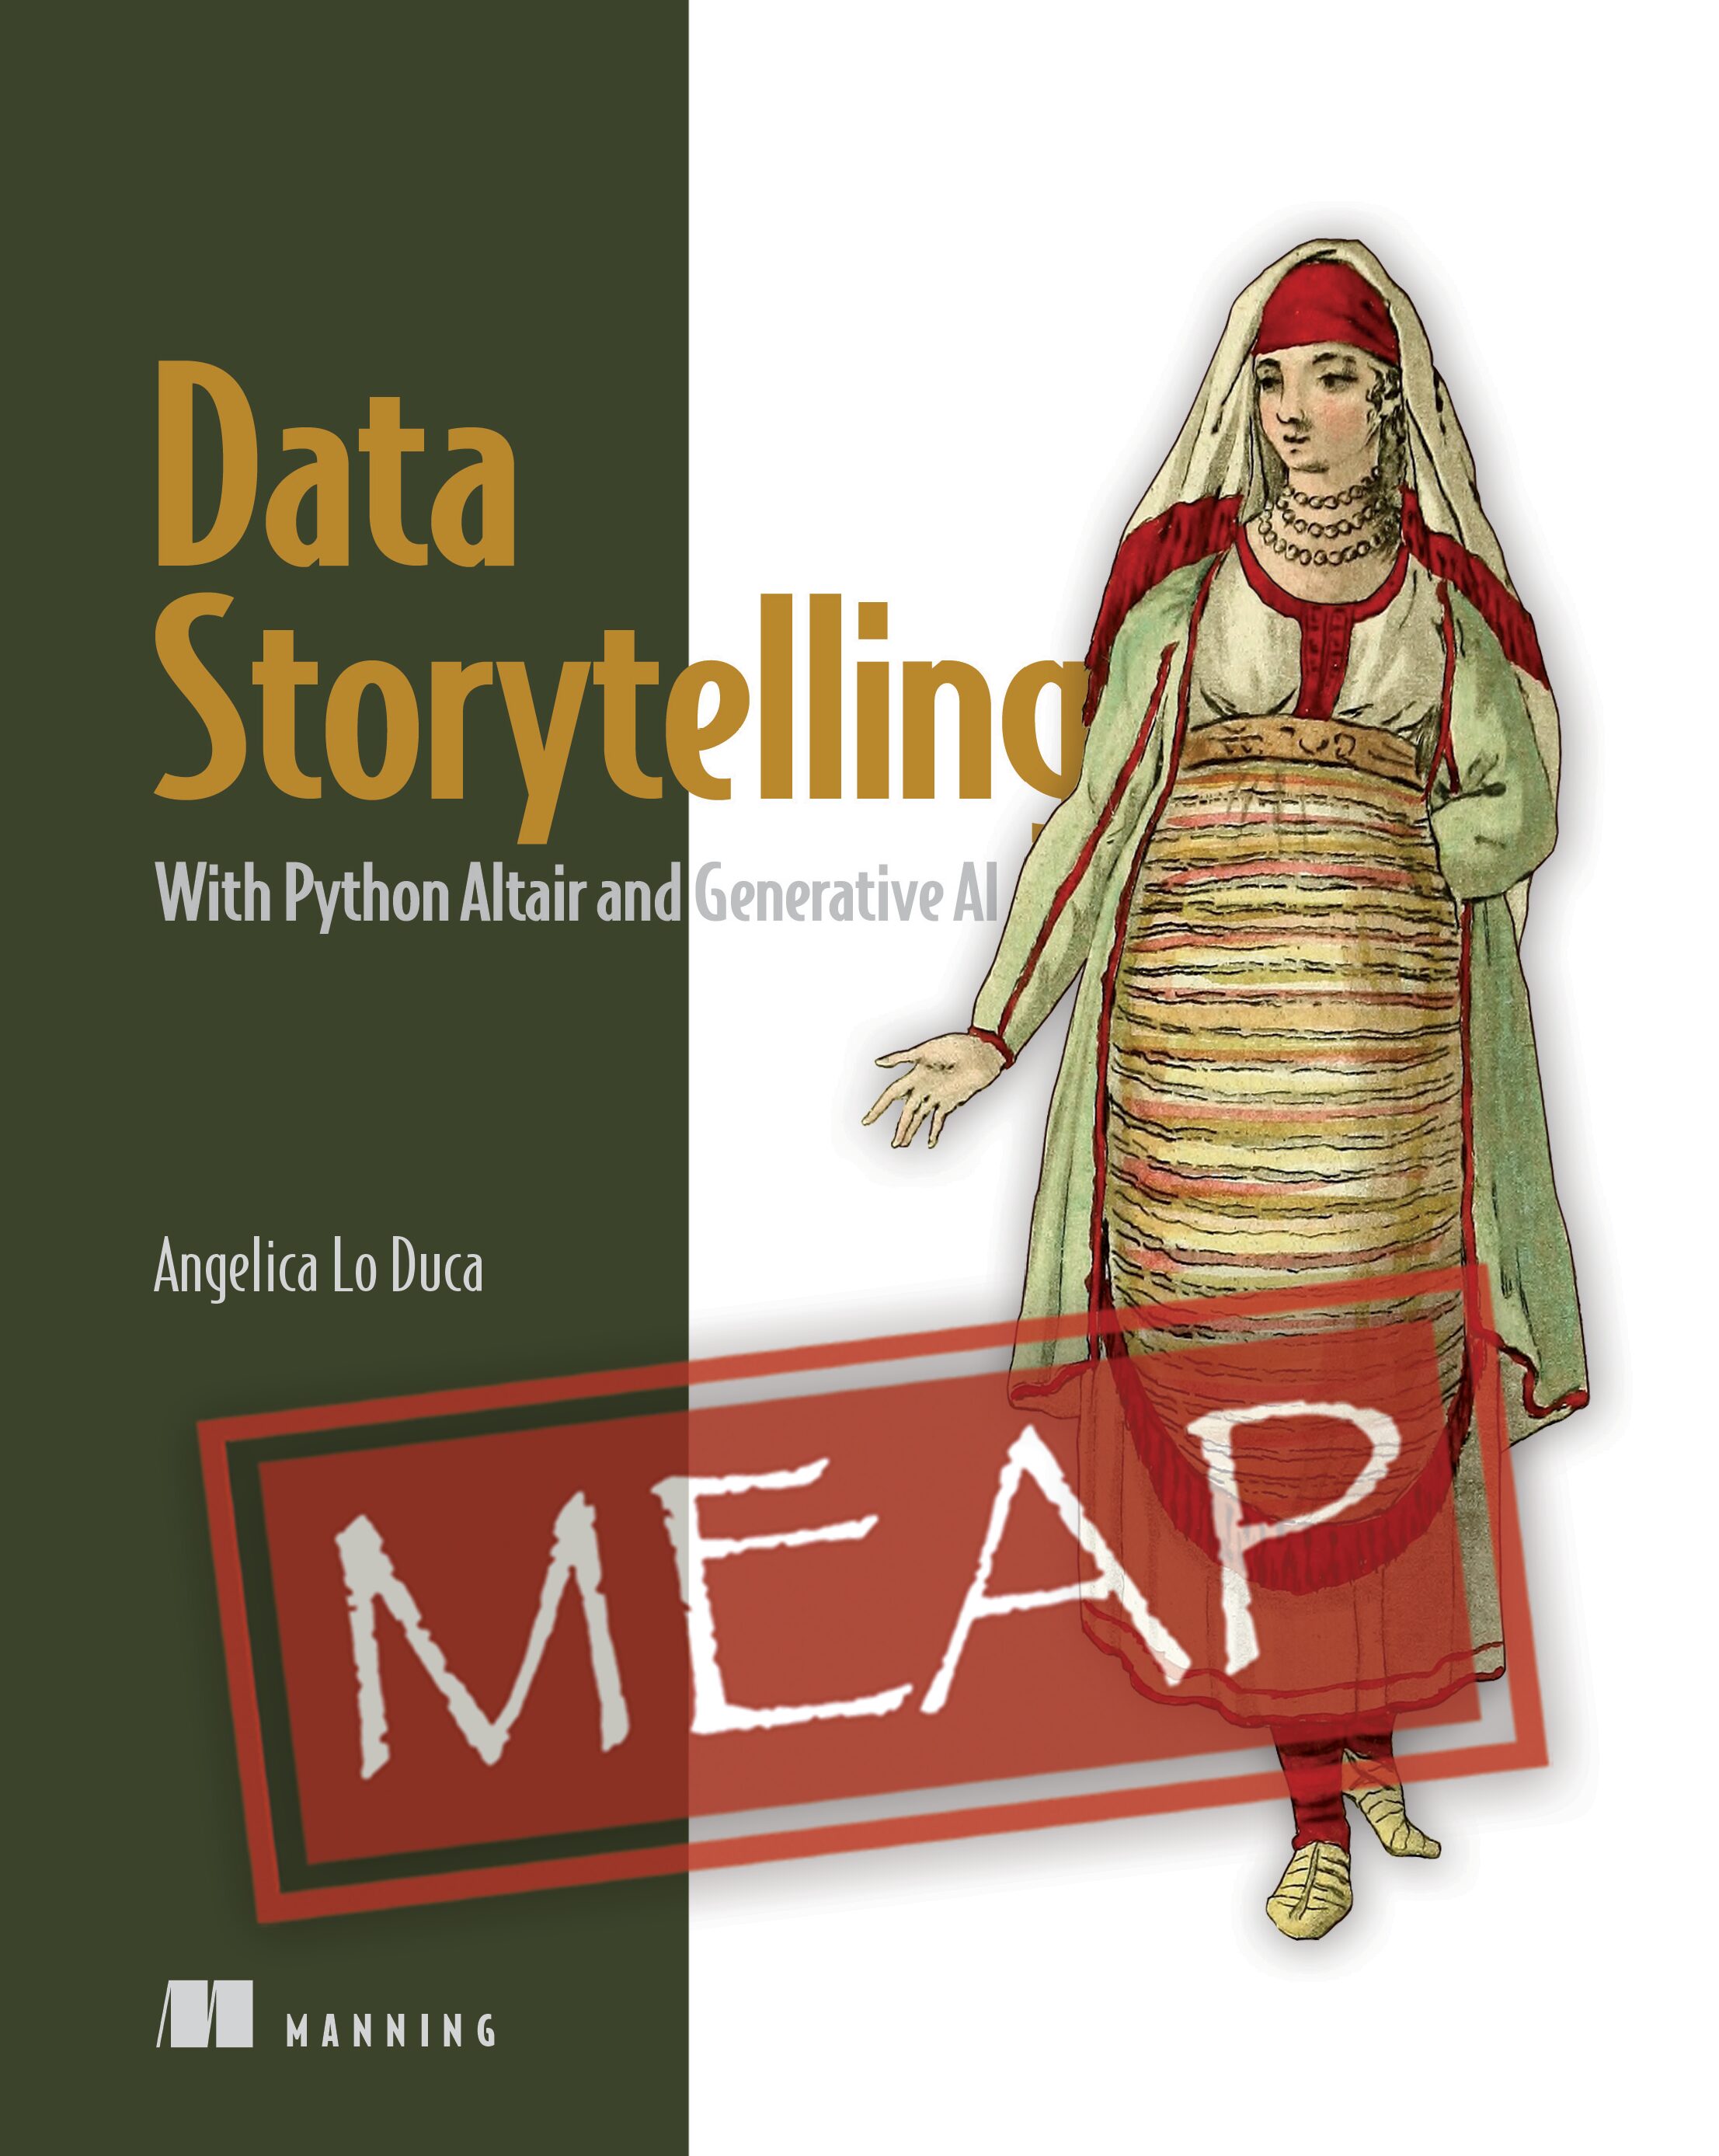 Data storytelling - l'art de raconter des histoires à travers les données